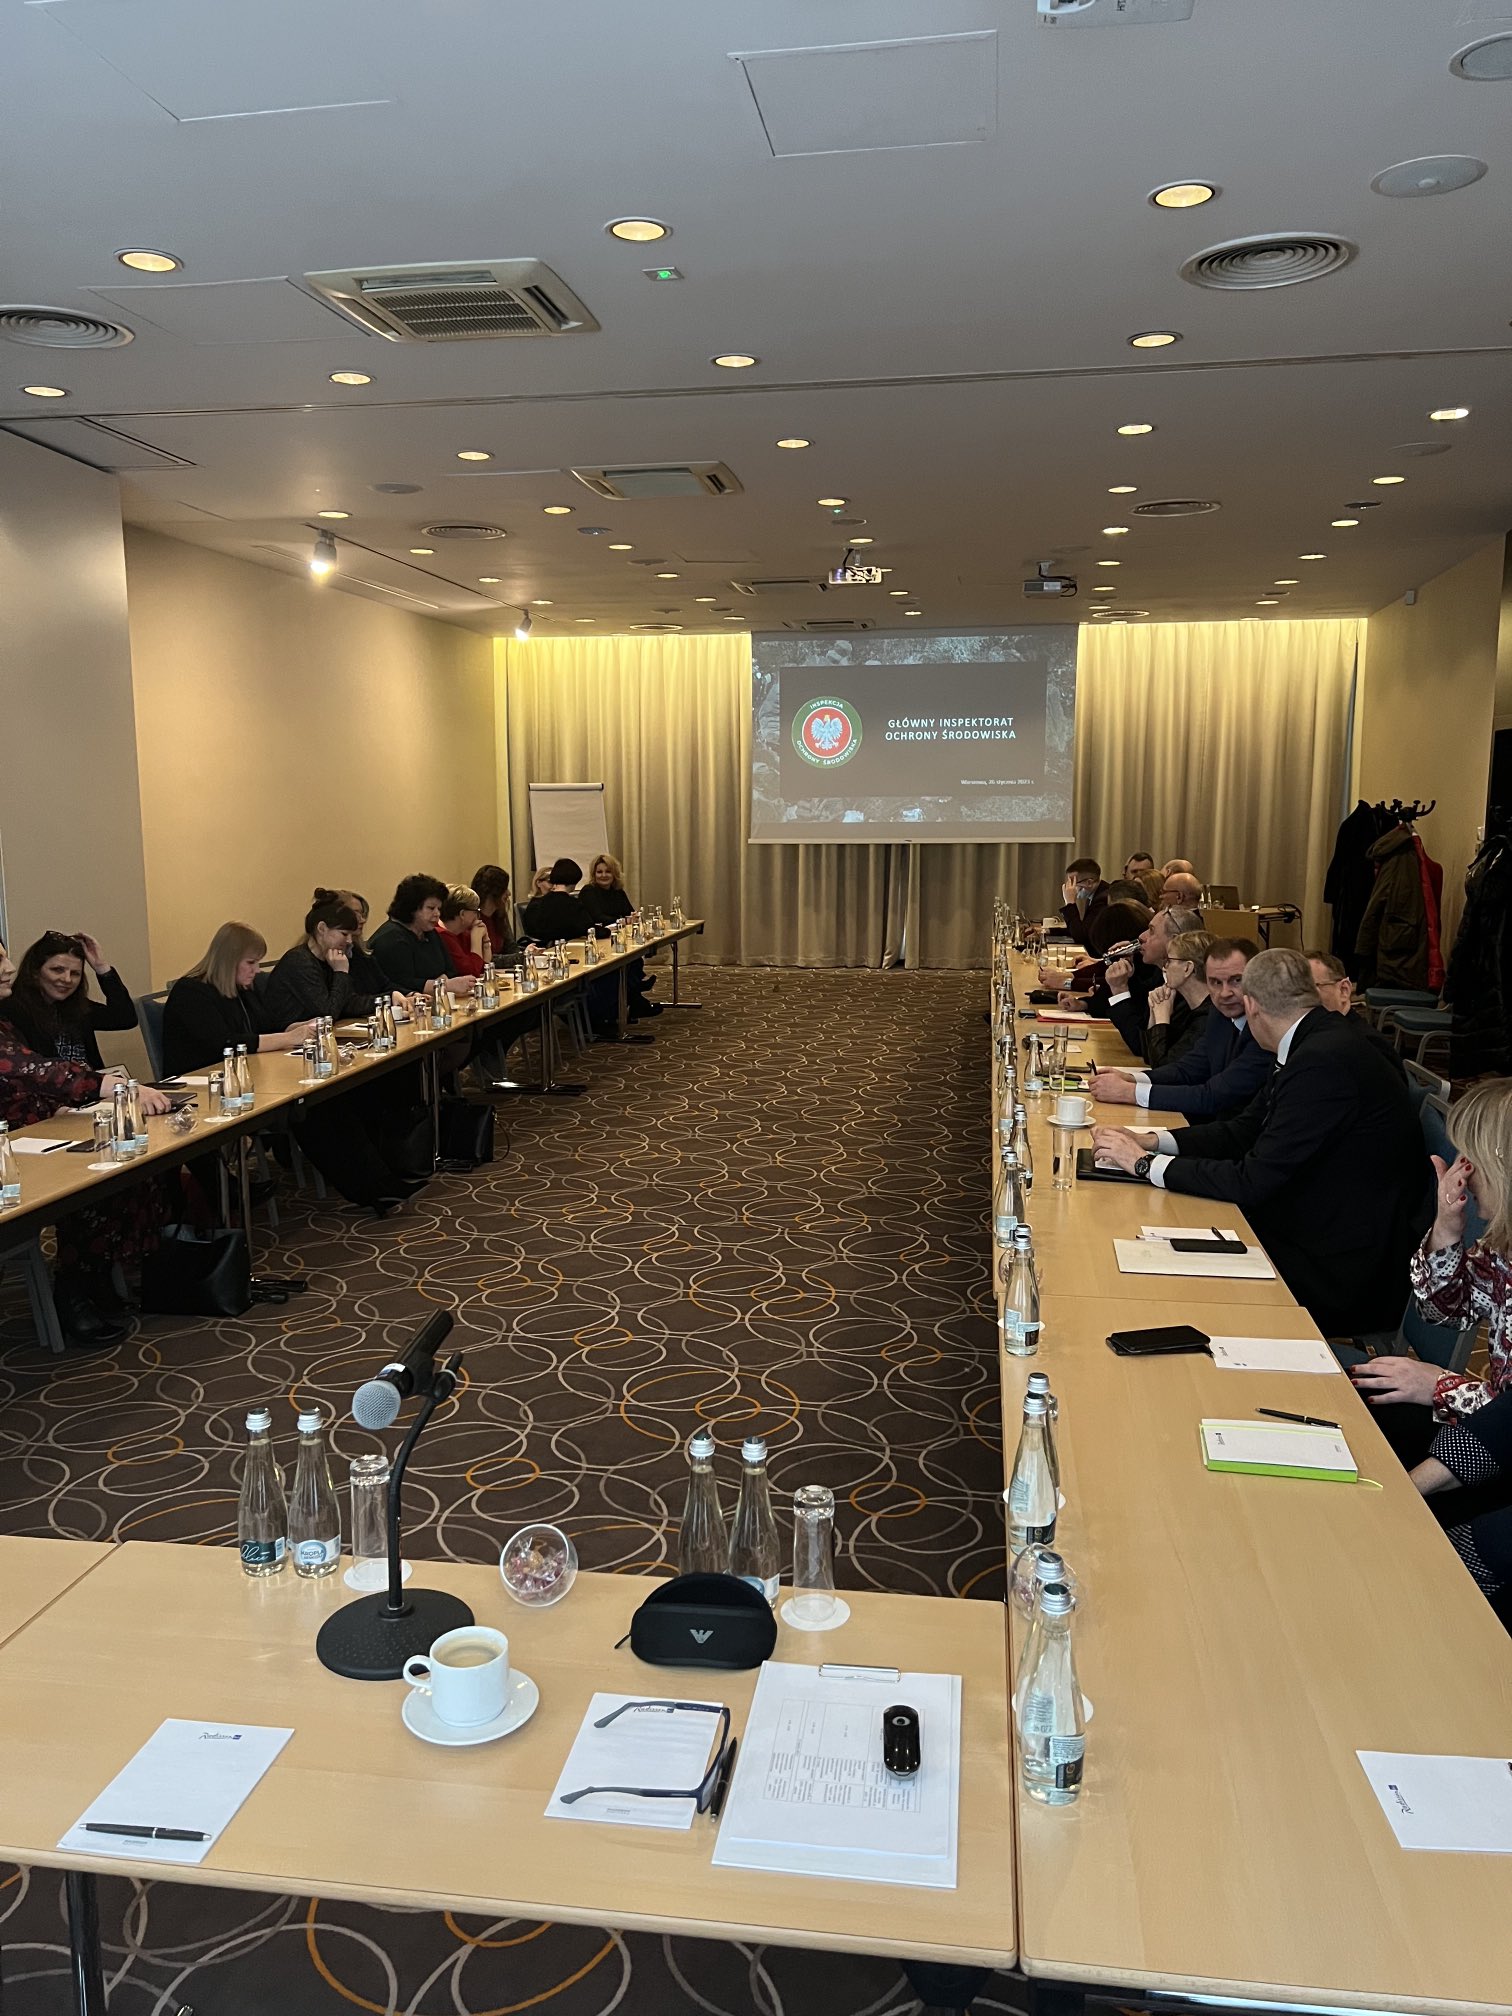 Wojewódzcy Inspektorzy Ochrony Środowiska i rzecznicy prasowi podczas spotkania w Warszawie